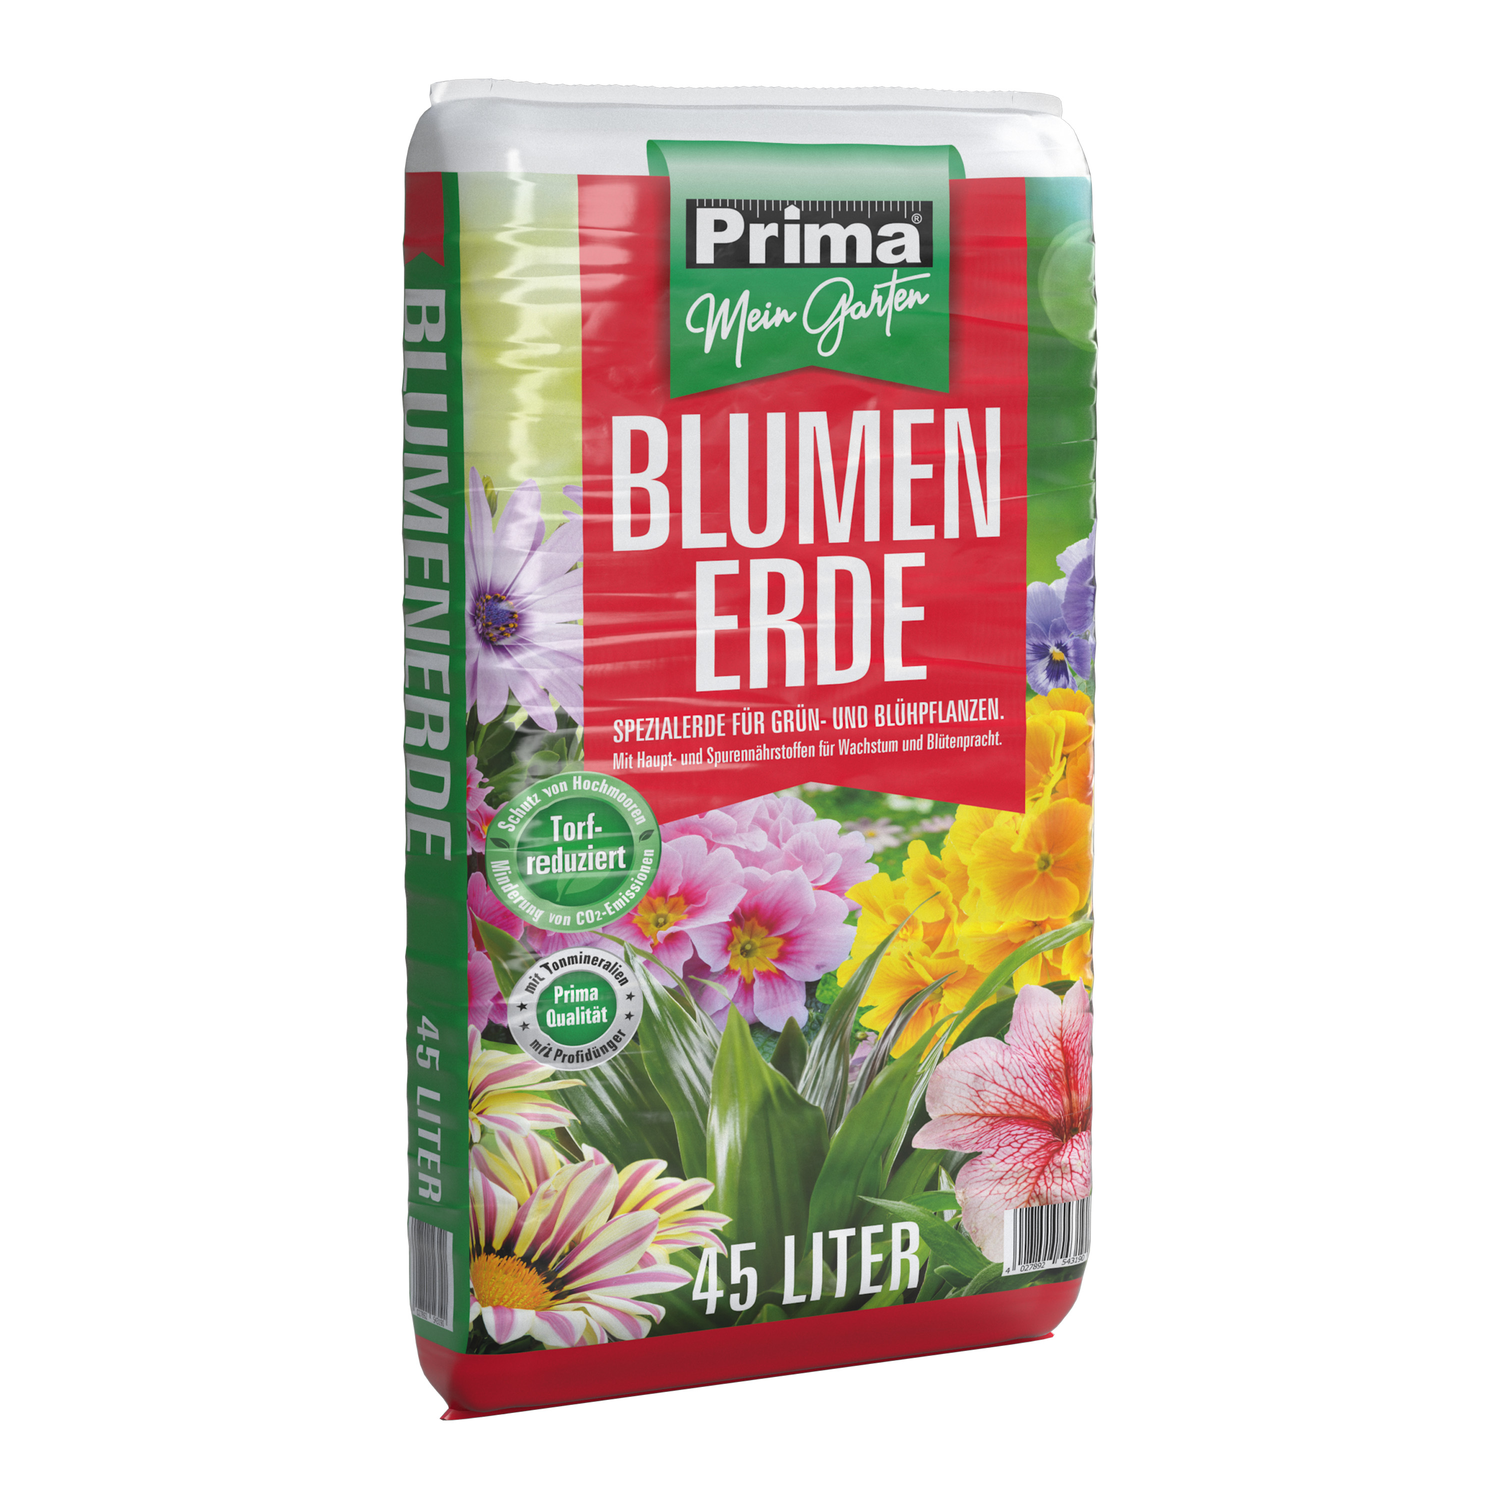 PRIMA Blumenerde 45 Liter, Blumen- und Gartenerde, torfreduziert 